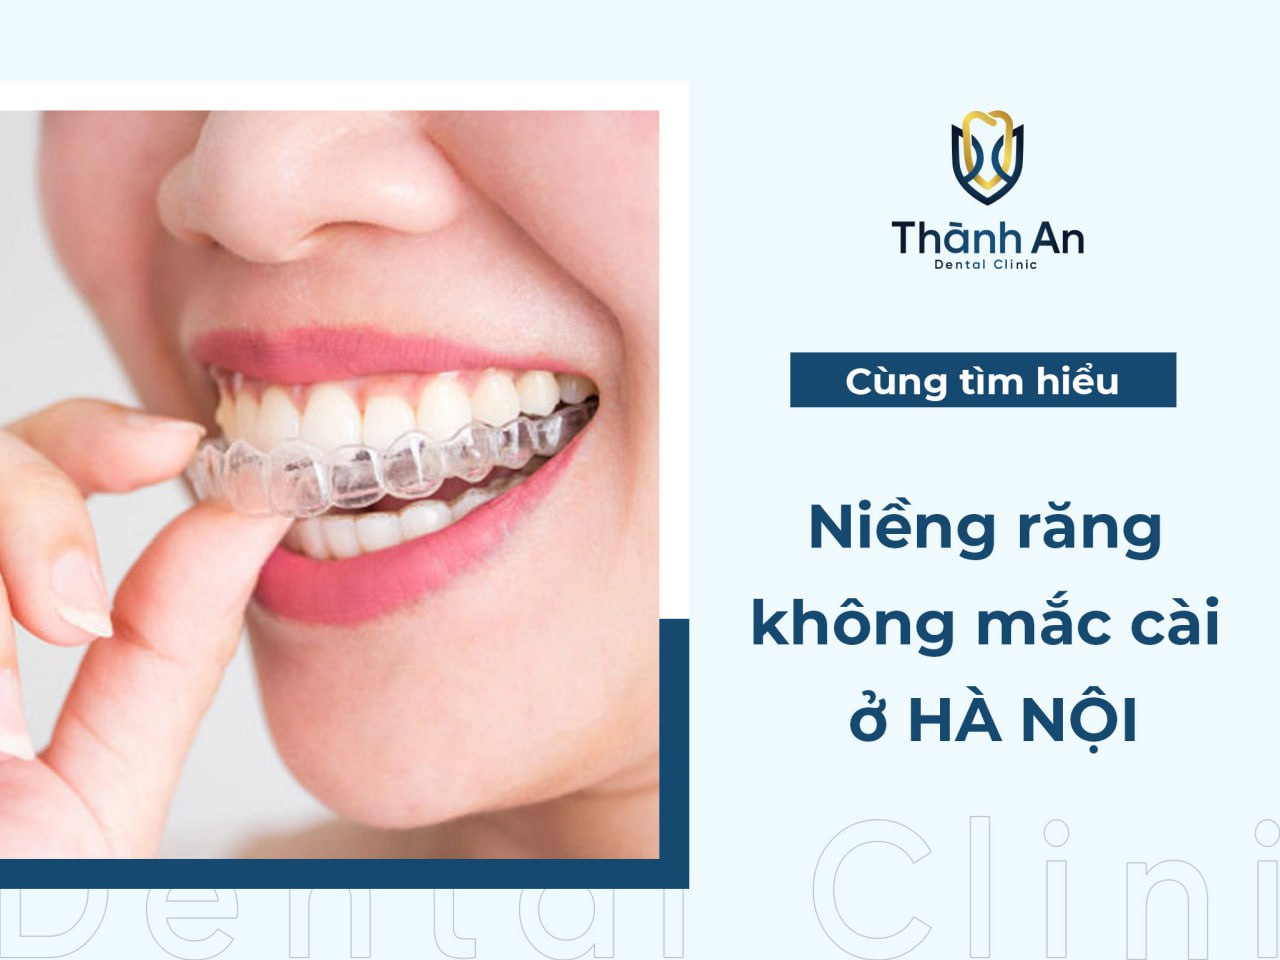 Niềng răng không mắc cài ở Hà Nội giá bao nhiêu?